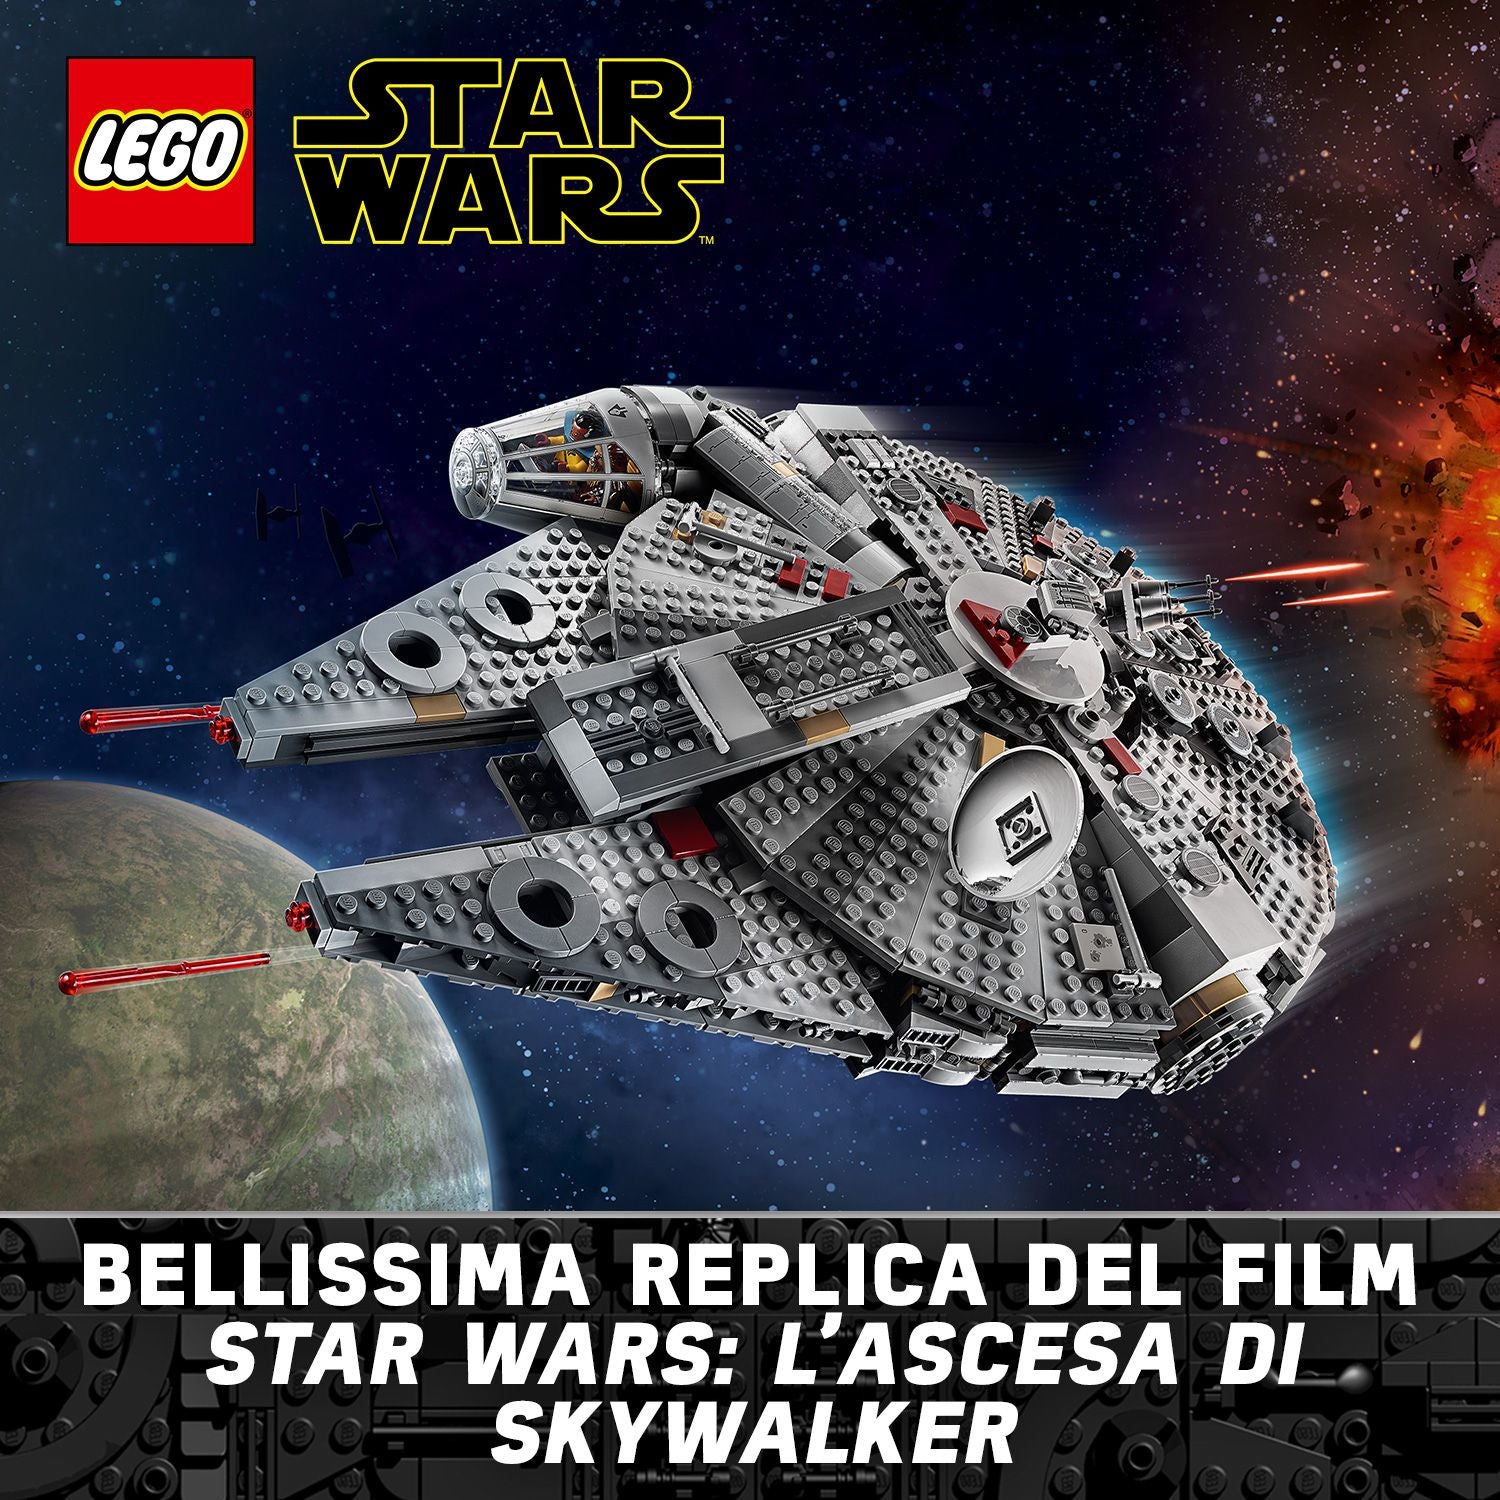 75257 LEGO® Star Wars - Millennium Falcon